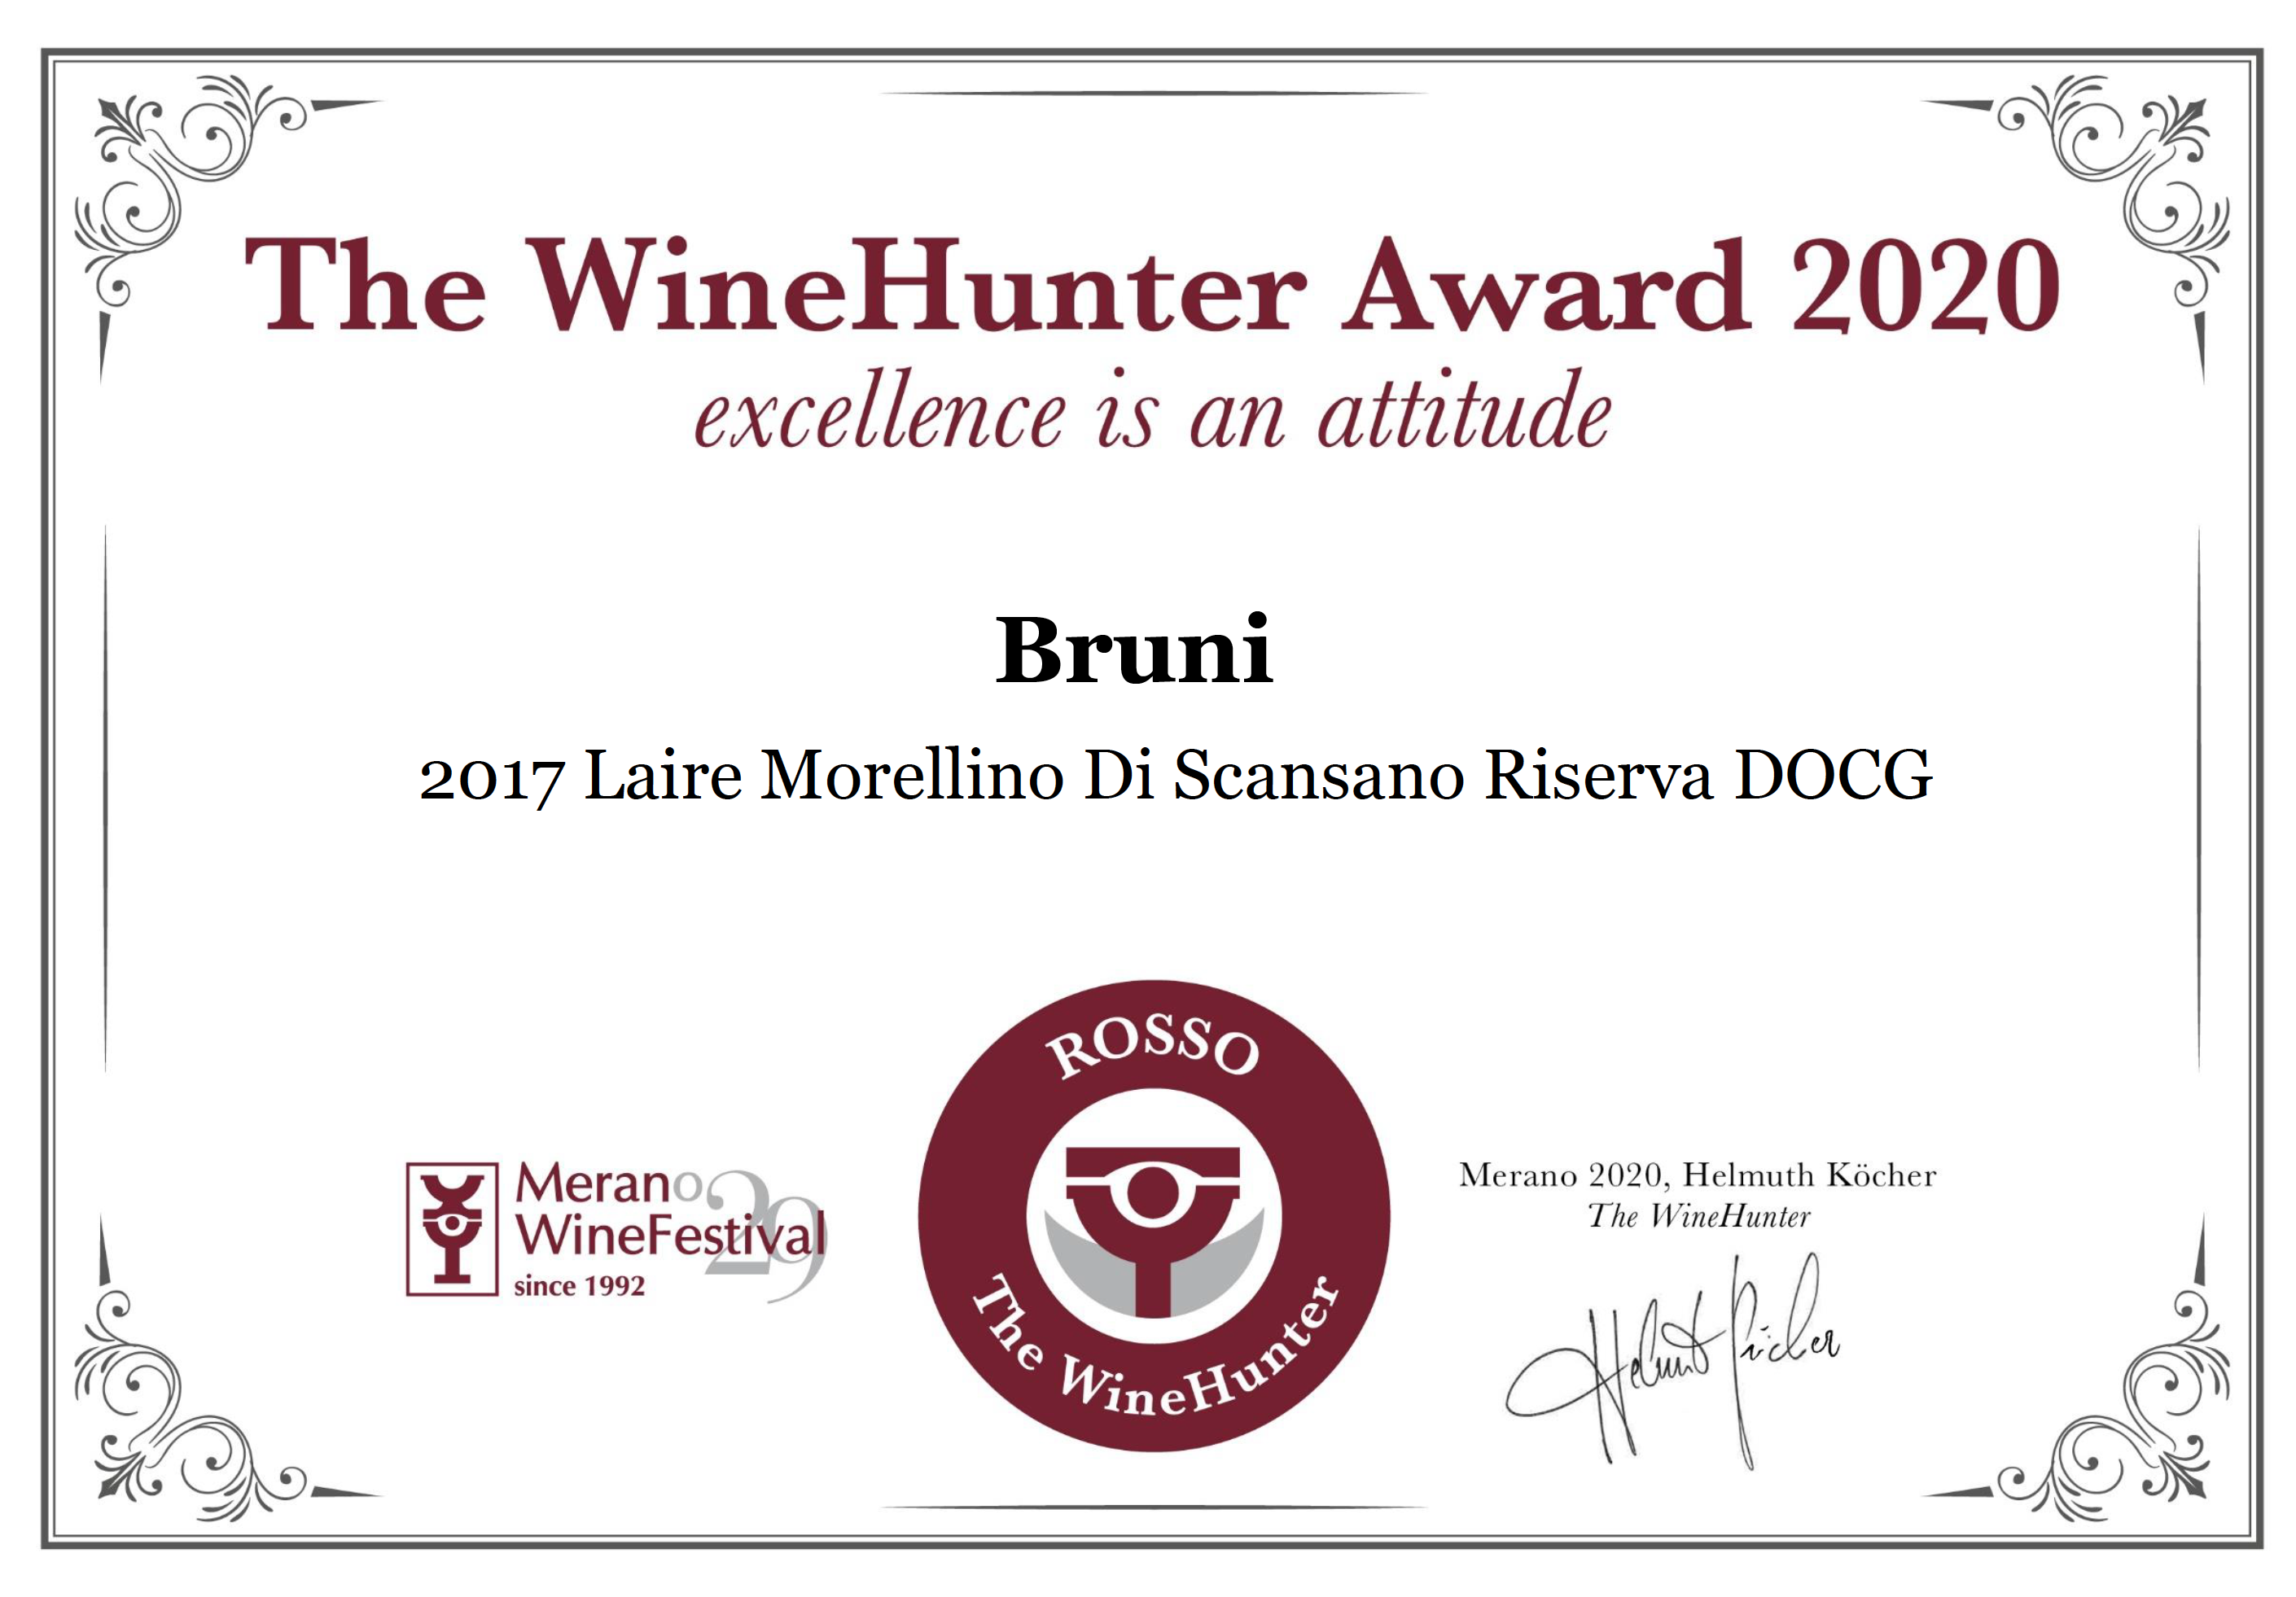 The WineHunter Award 2020 – Laire Morellino Di Scansano Riserva DOCG 2017